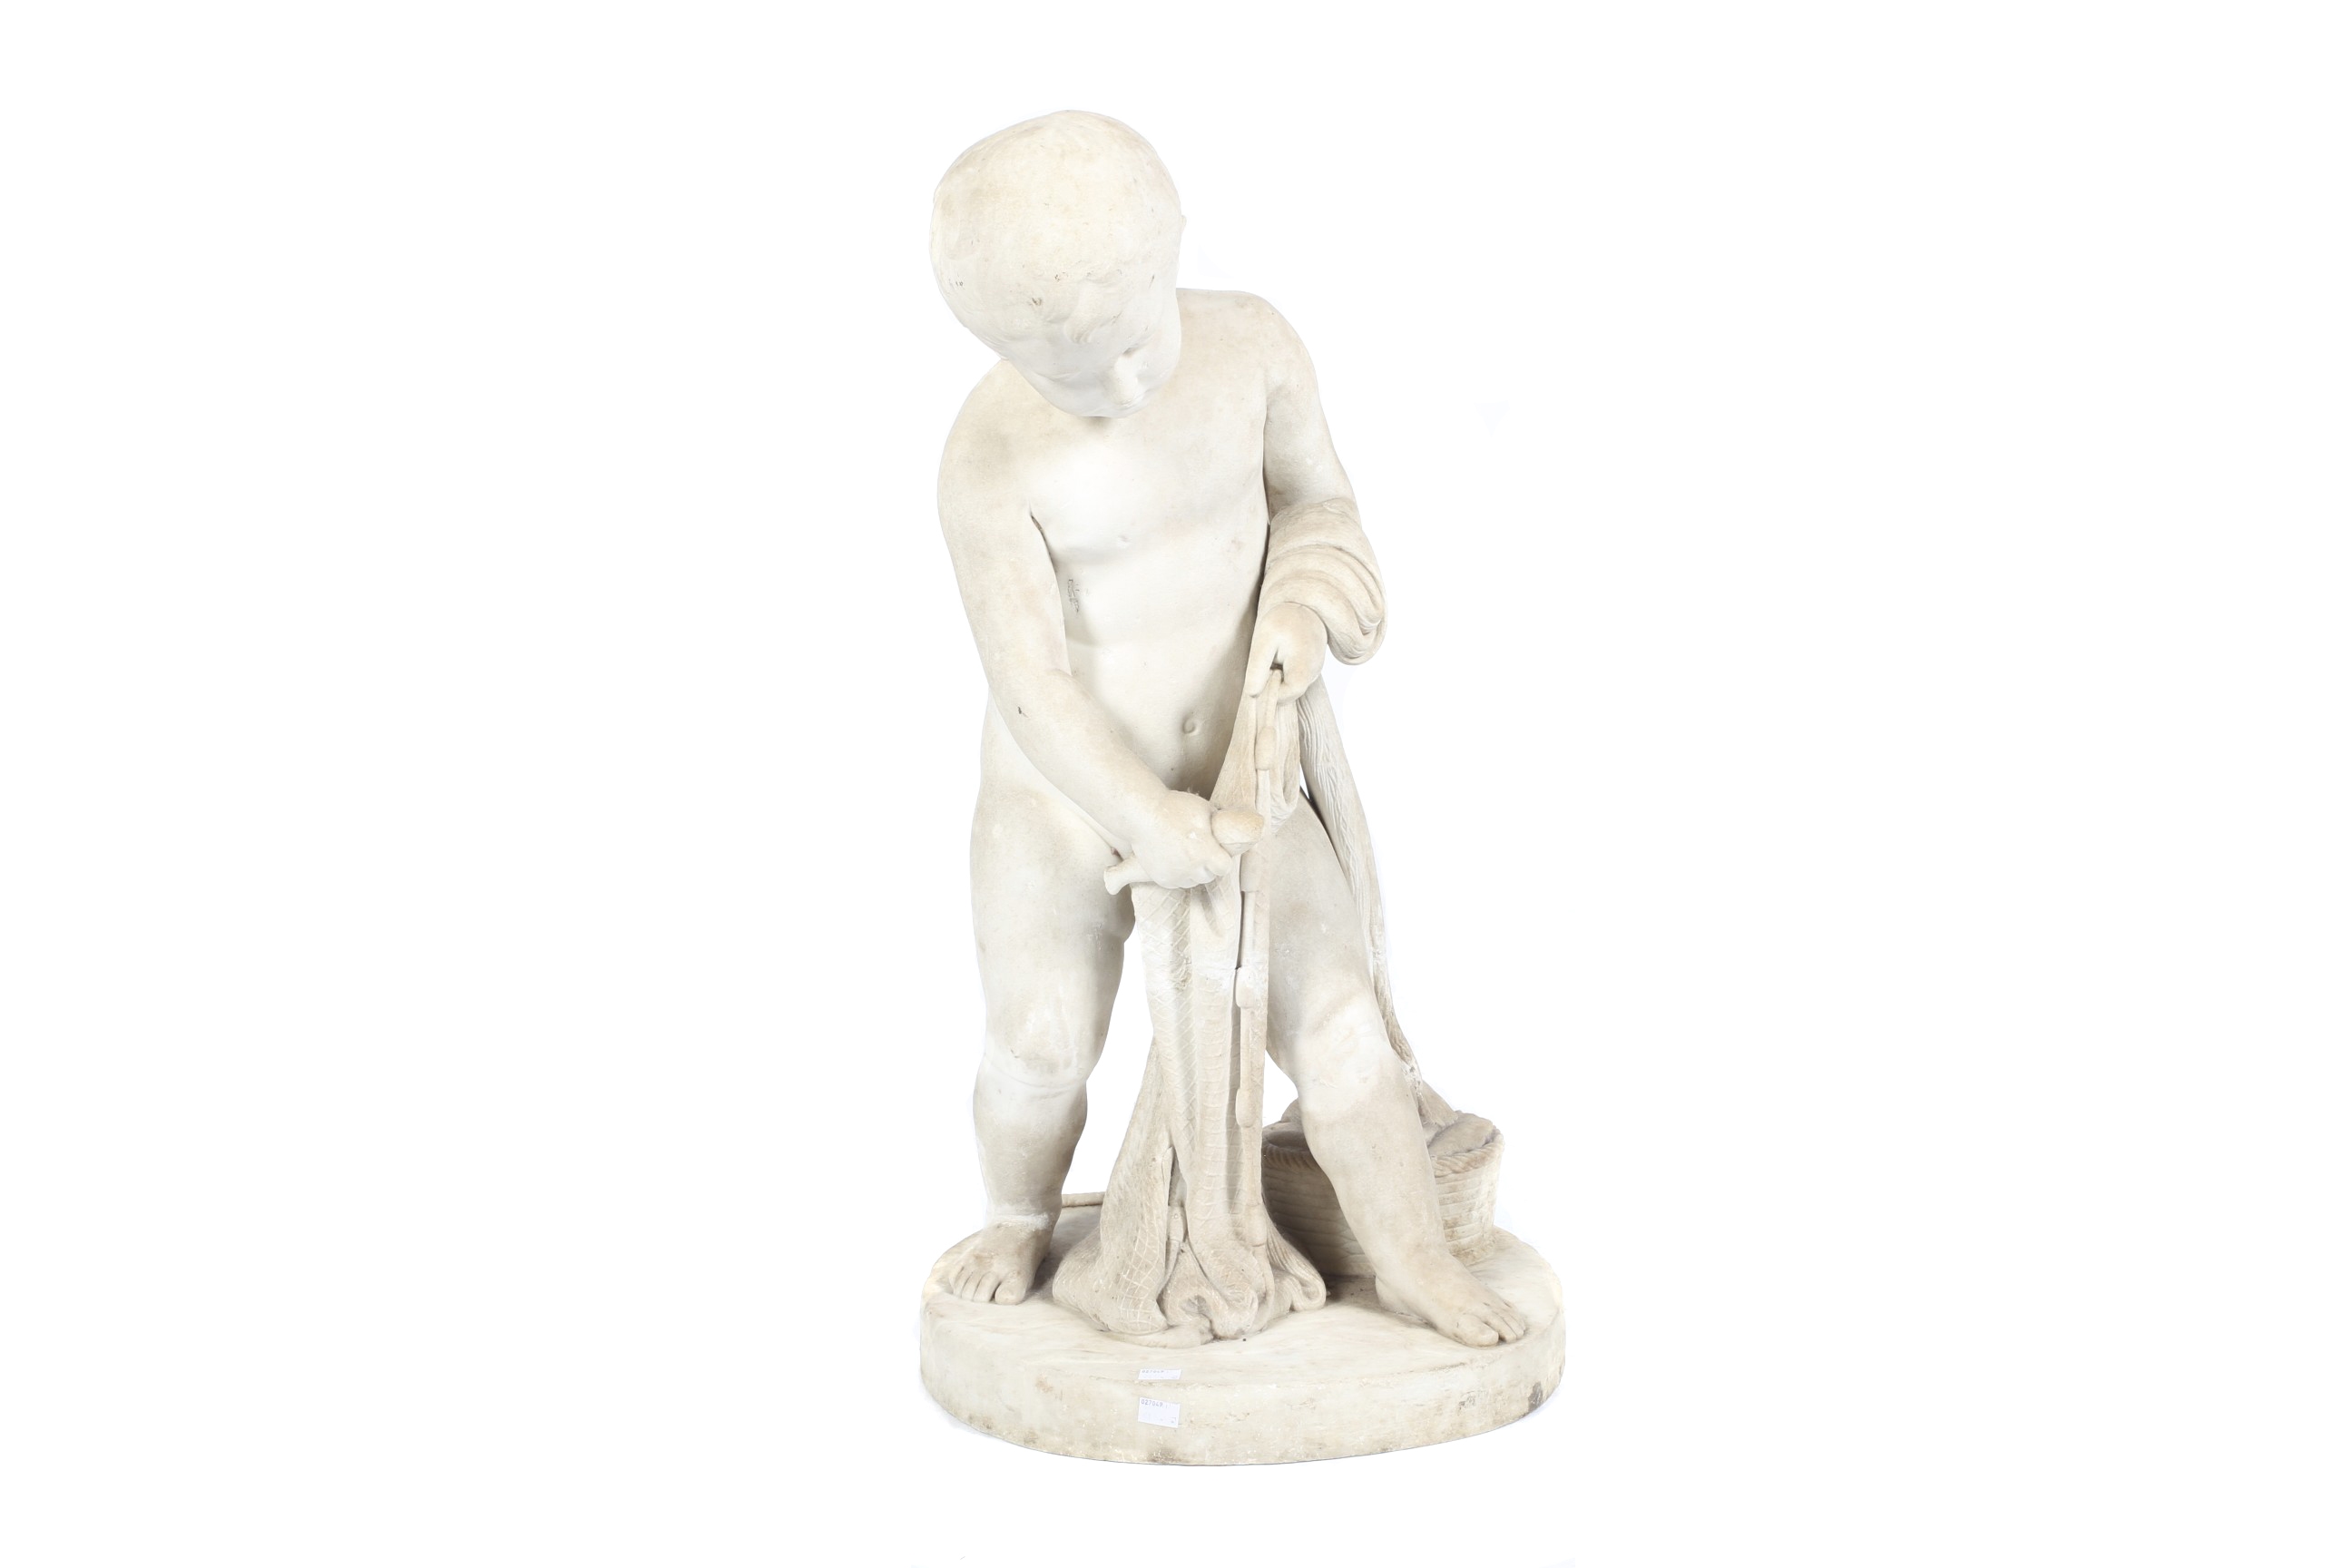 Artwork by Pietro Tenerani, Genio della Pesca, Made of white marble sculpture